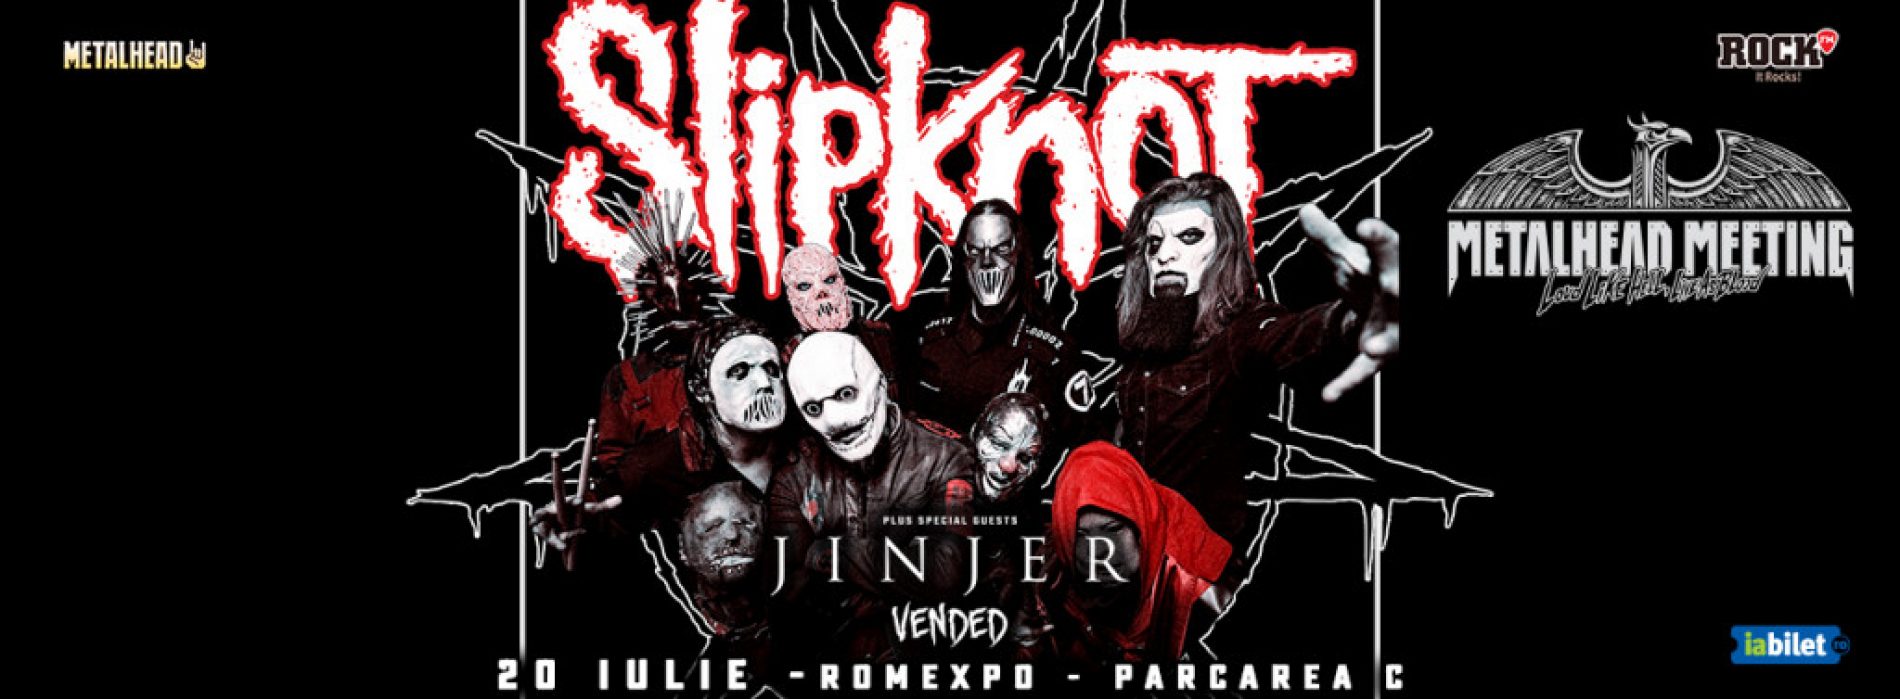 Galerie foto concert Slipknot, Jinjer și Vended la Romexpo